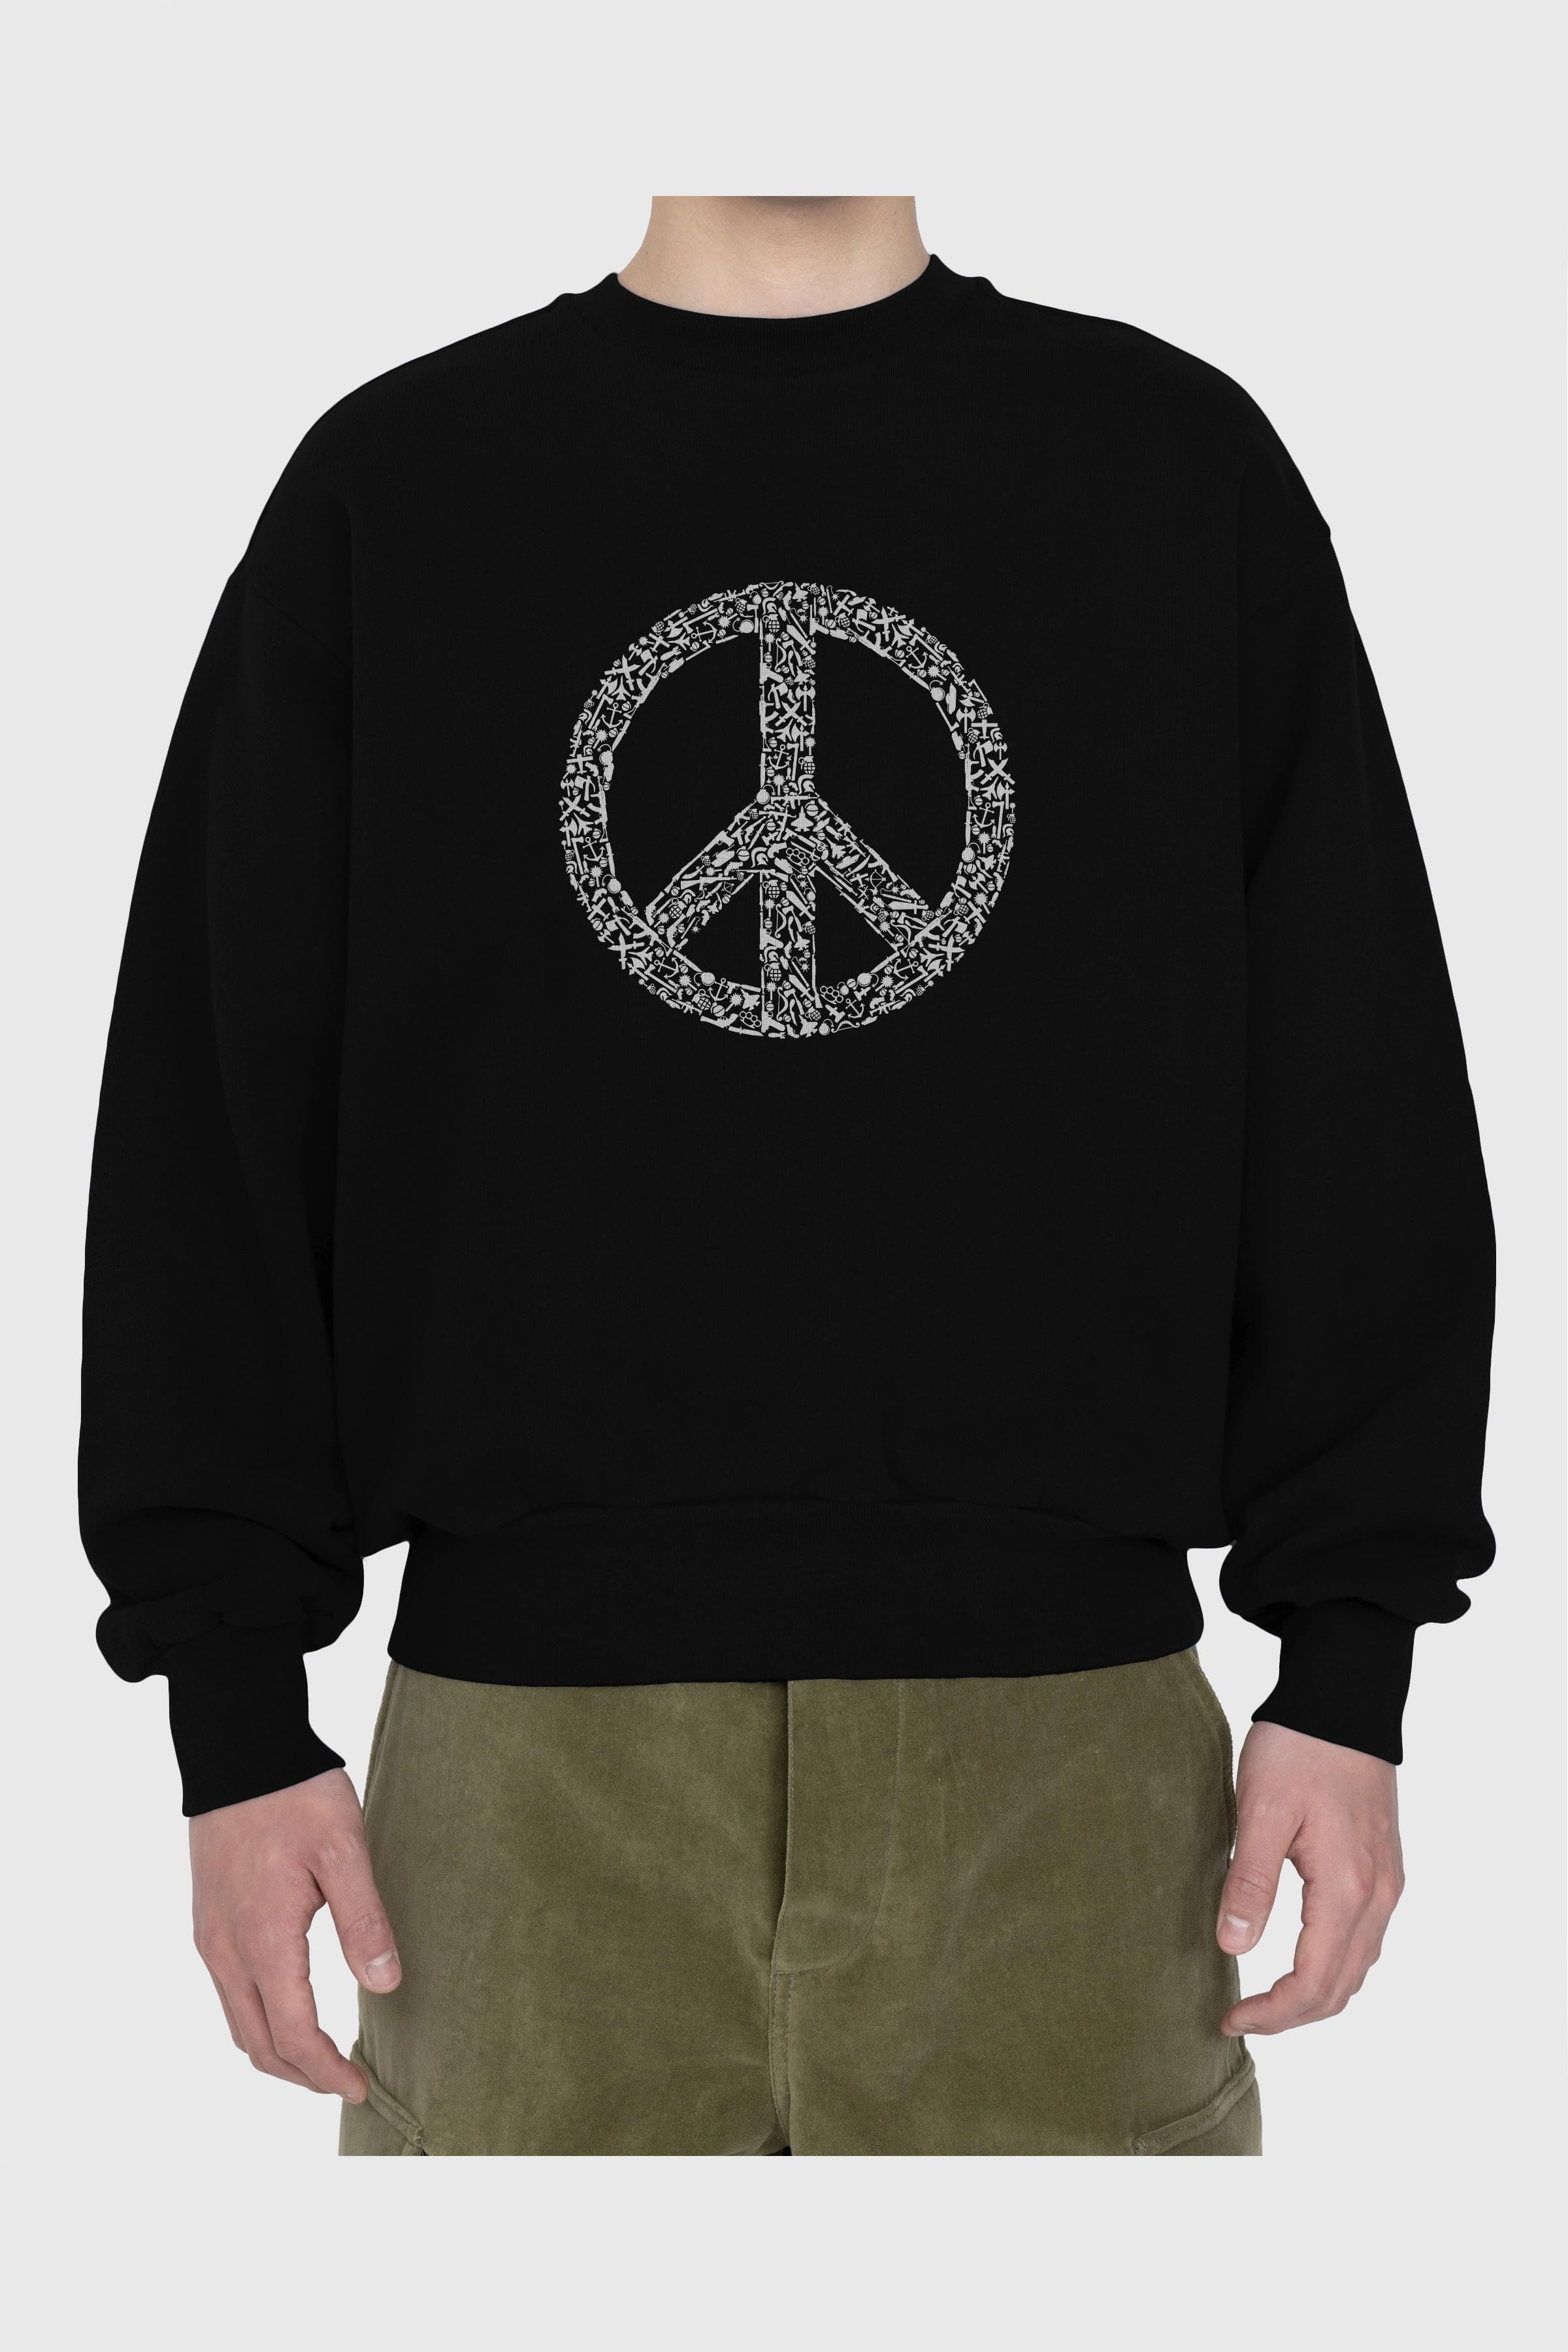 War Peace Ön Baskılı Oversize Sweatshirt Erkek Kadın Unisex